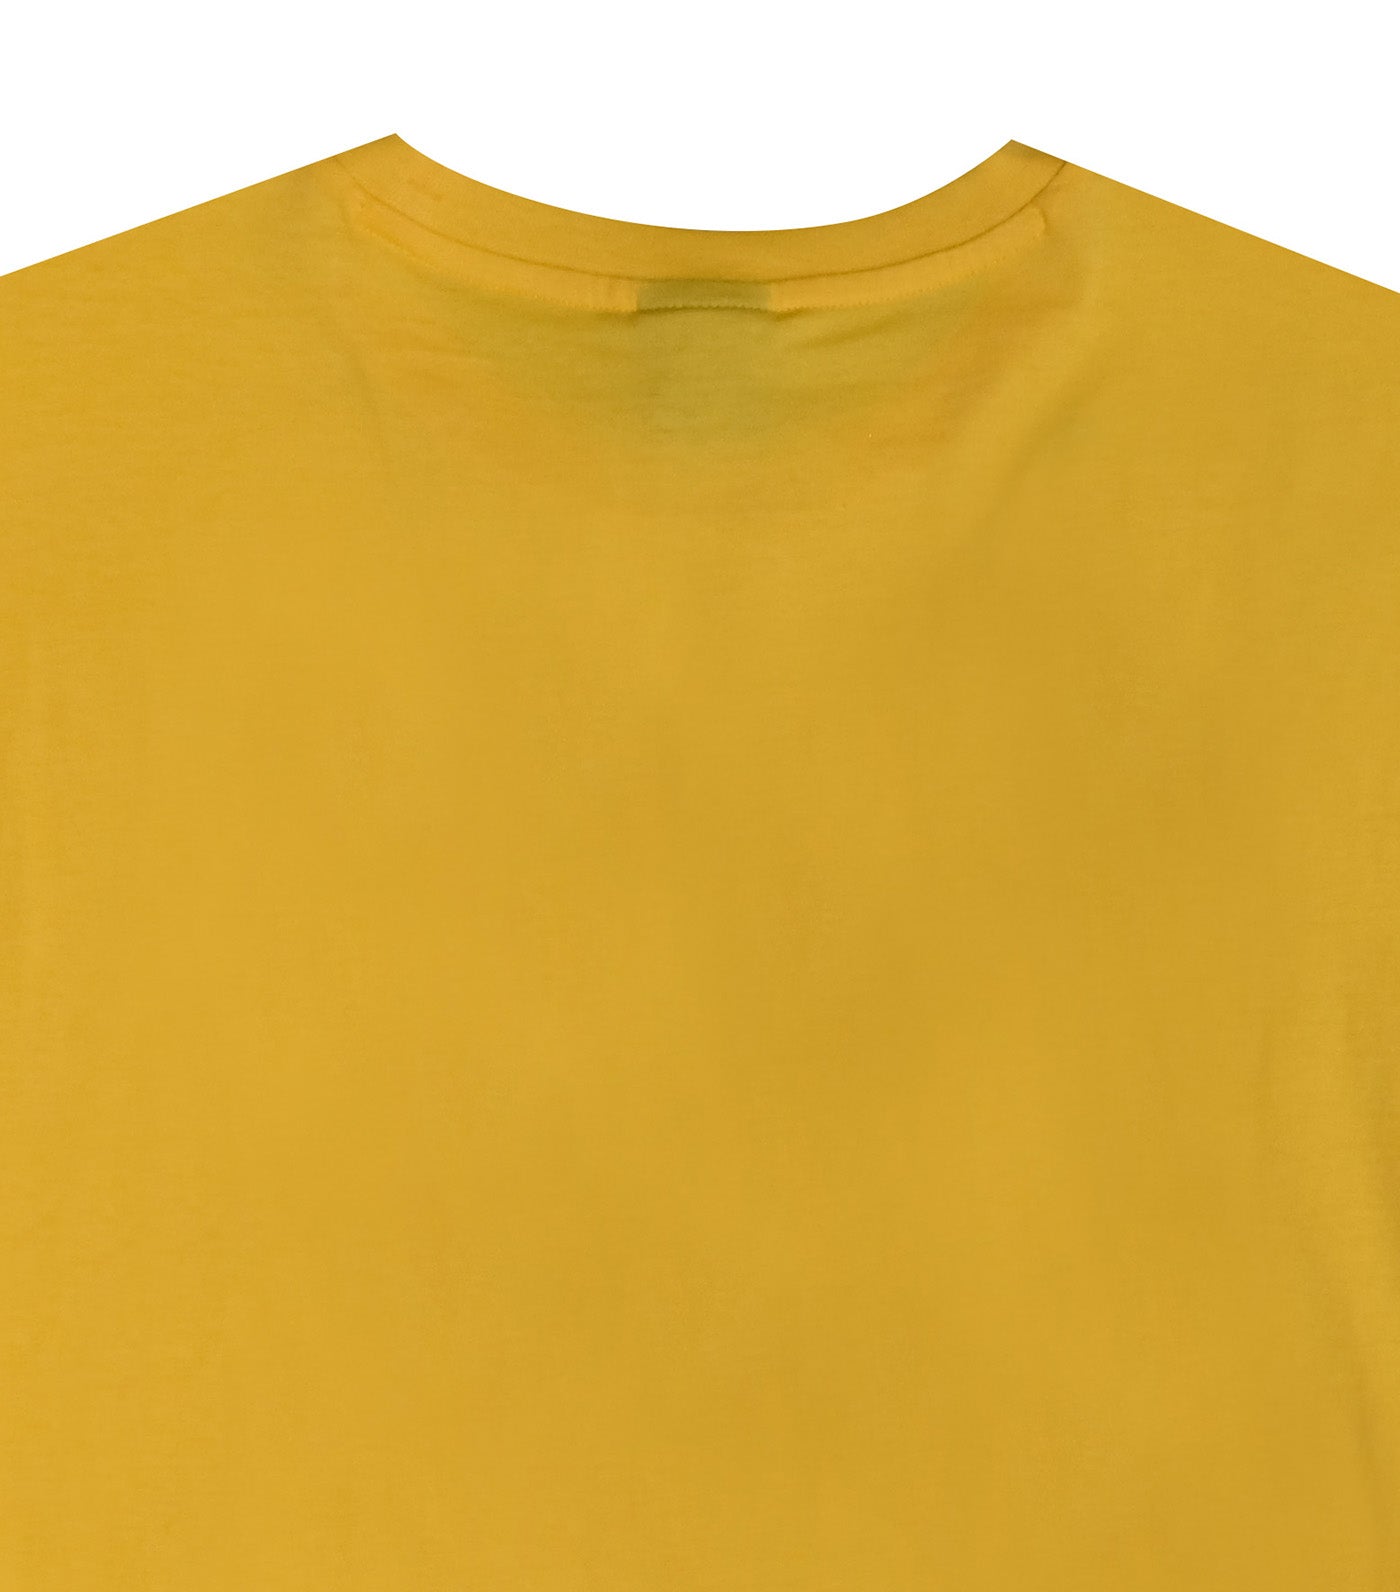 EU Line Crewneck T-Shirt Yellow